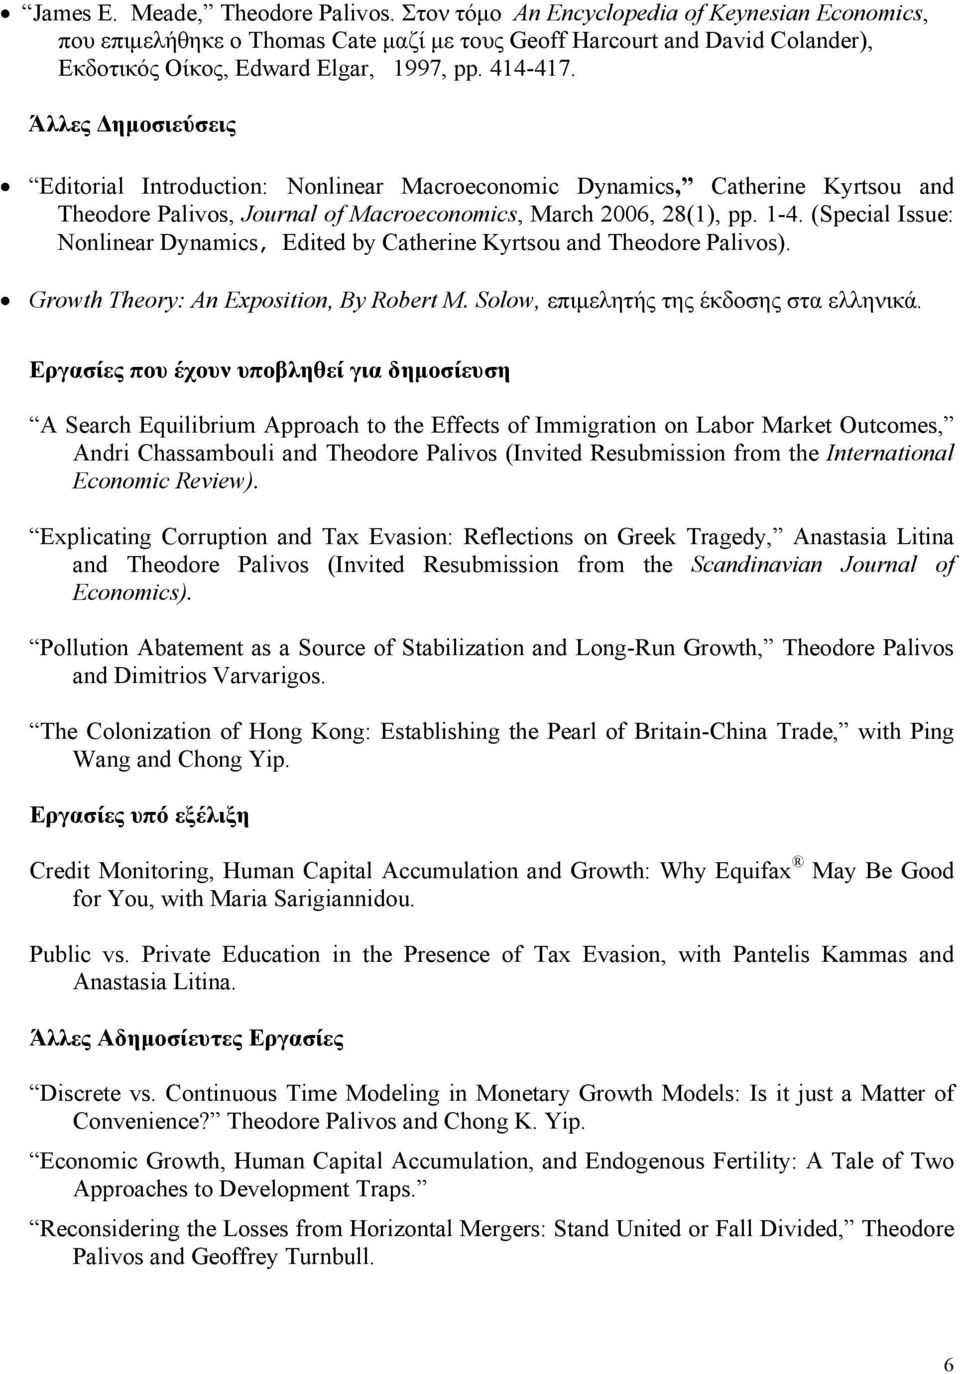 Άλλες Δημοσιεύσεις Editorial Introduction: Nonlinear Macroeconomic Dynamics, Catherine Kyrtsou and Theodore Palivos, Journal of Macroeconomics, March 2006, 28(1), pp. 1-4.